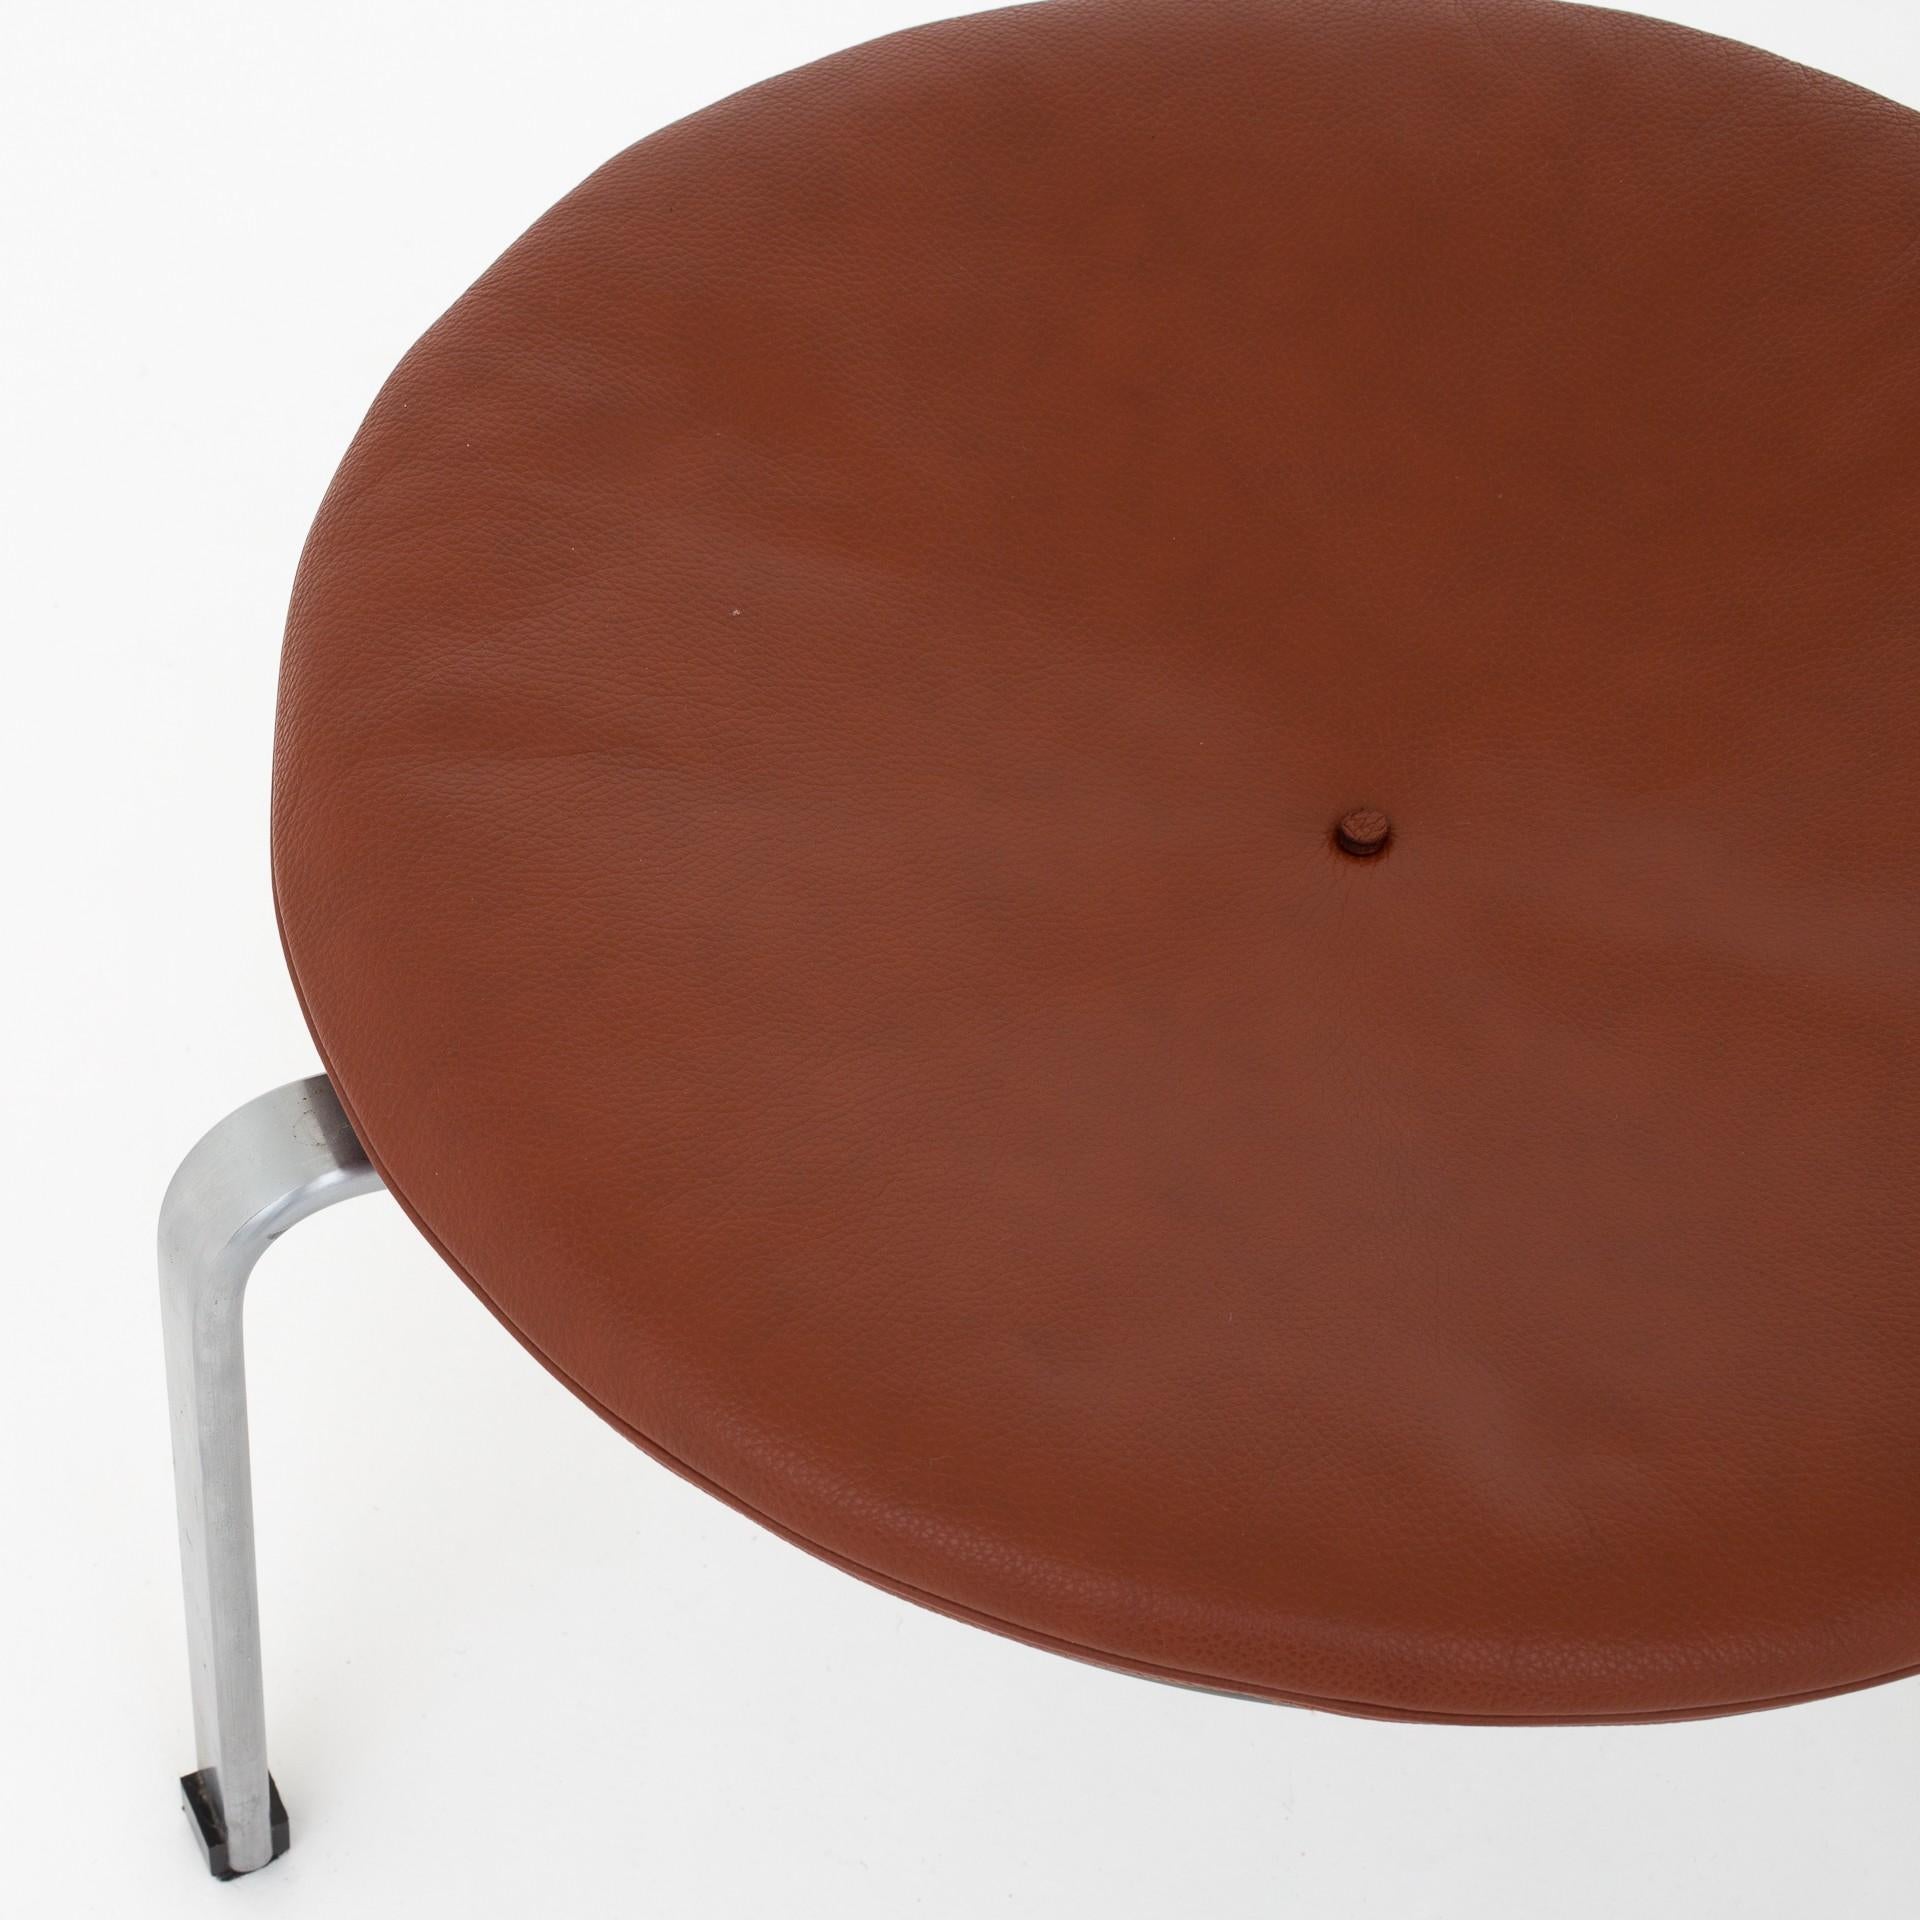 PK 33 stool in original, brown leather on steel frame. Maker Fritz Hansen.